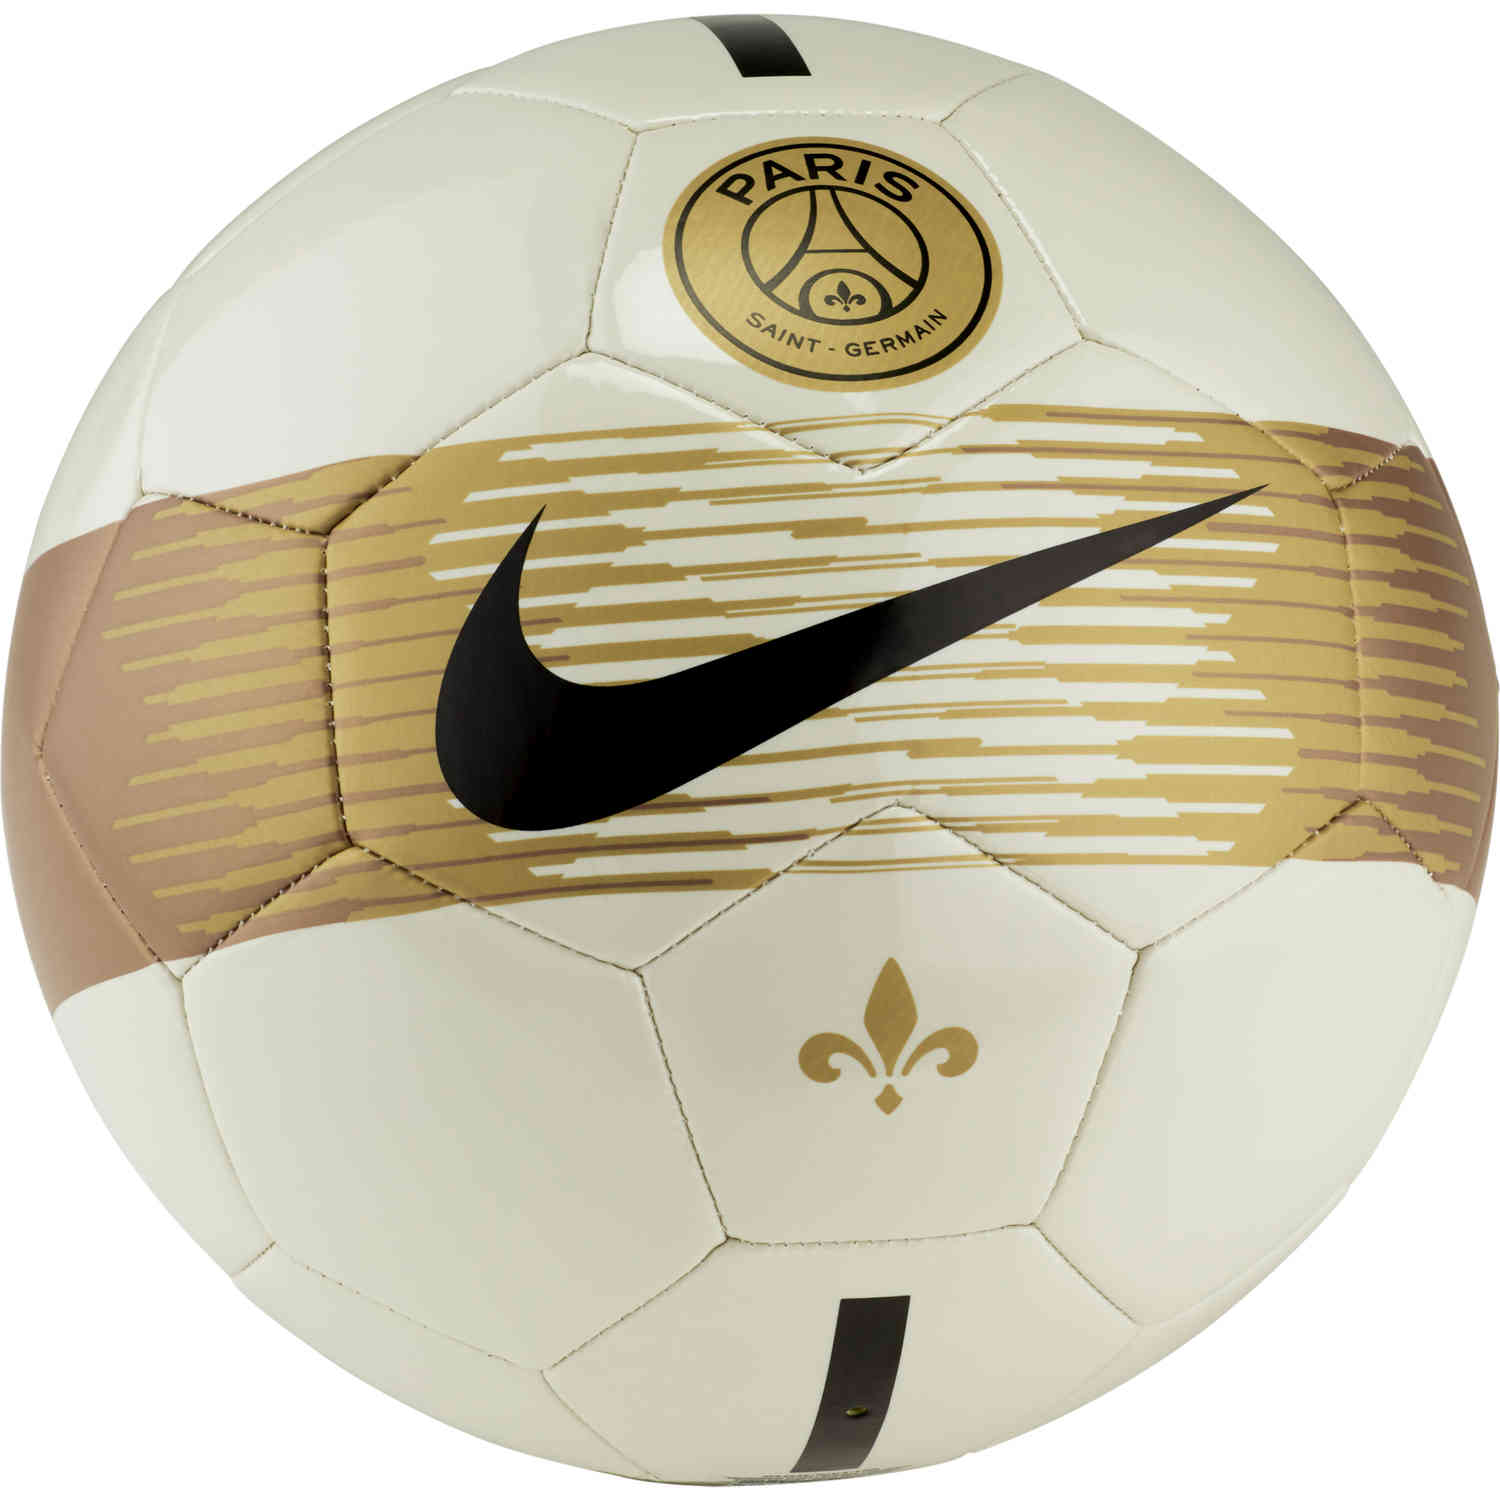 Idol Hairdresser Bud Nike PSG Supporters Soccer Ball - Light Bone/Black/Gold - SoccerPro